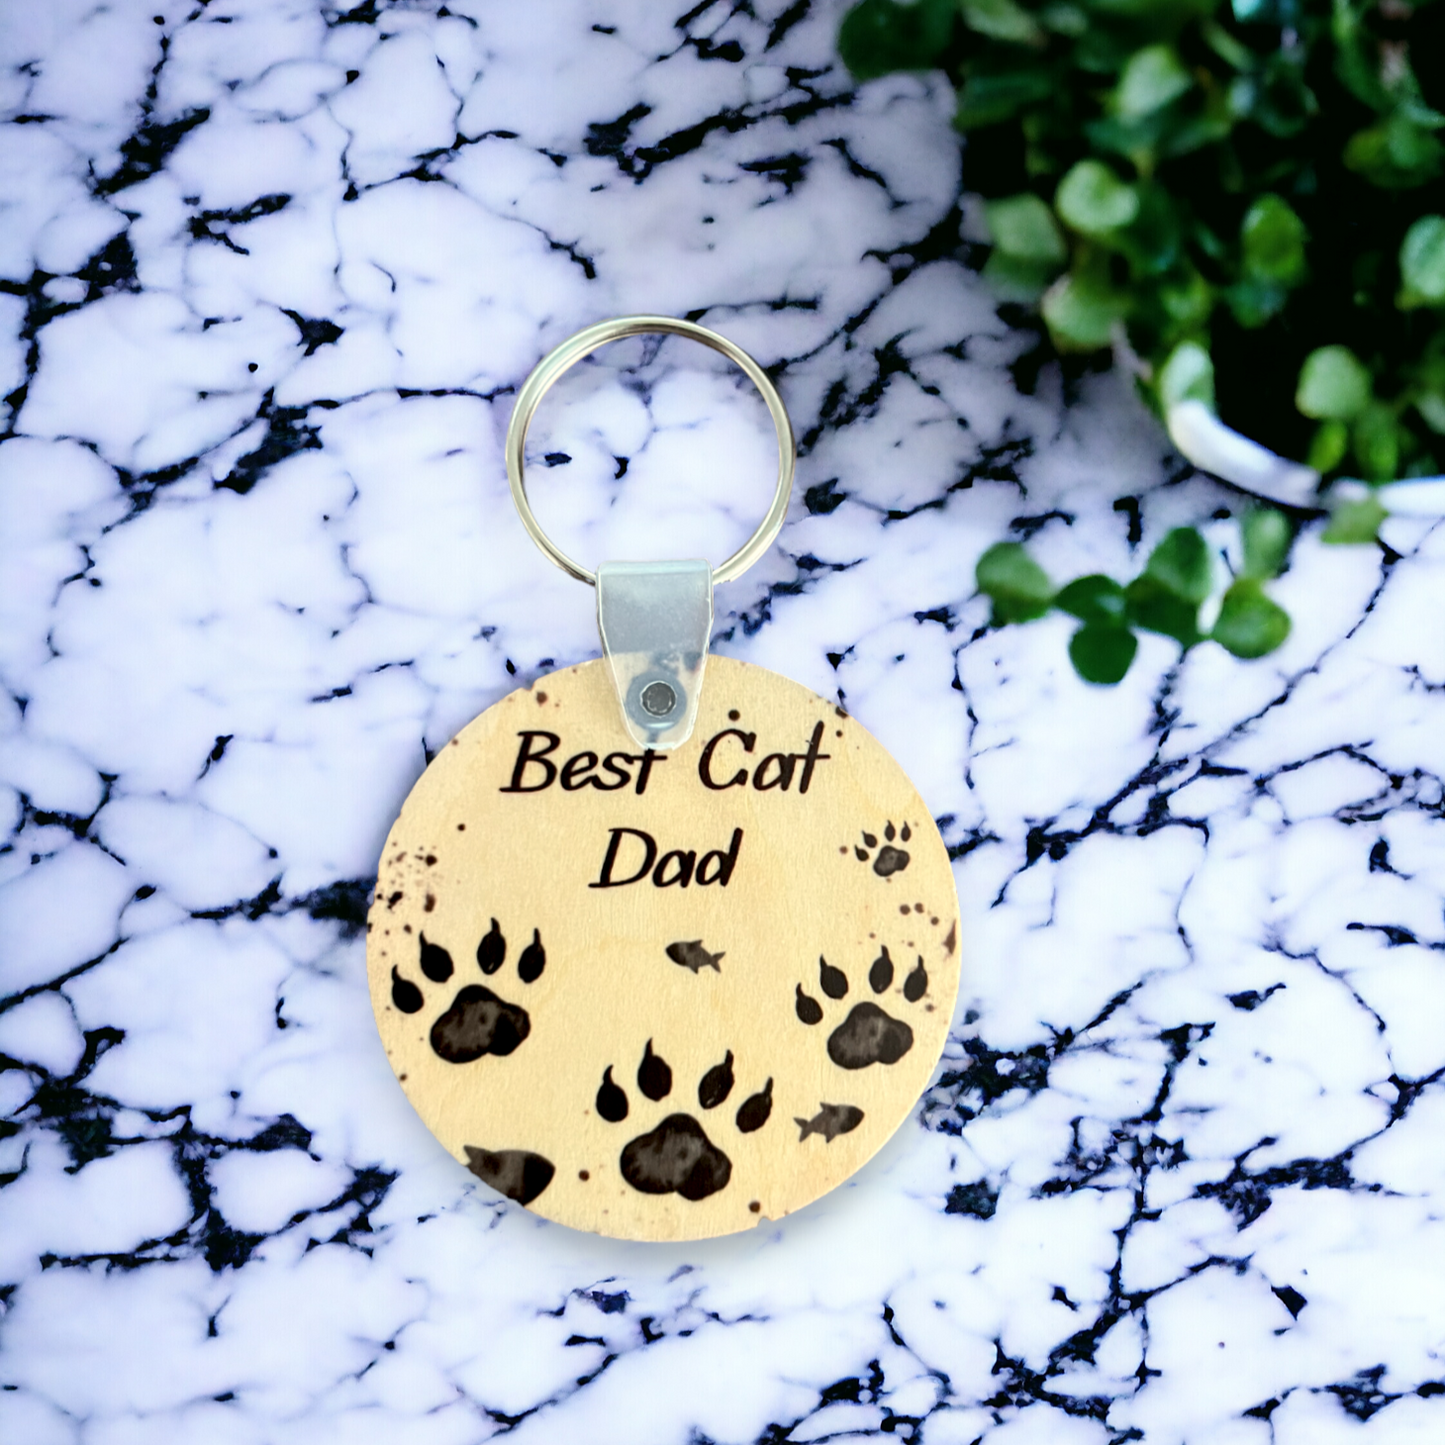 Best Cat Dad keychain